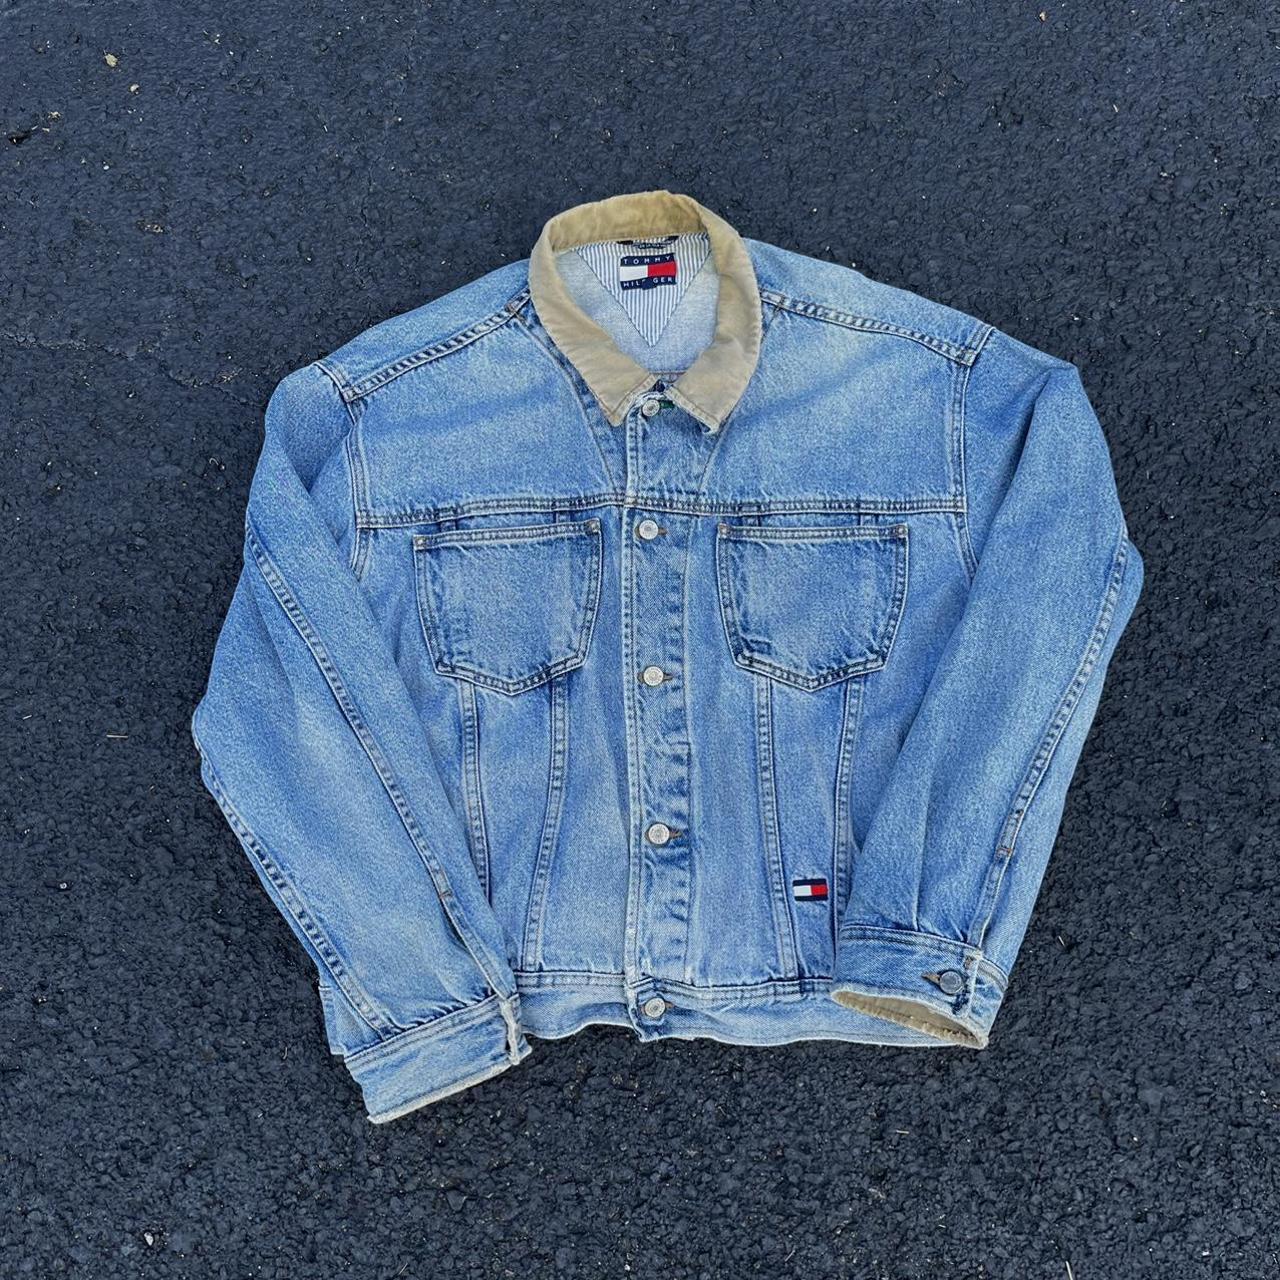 Vintage Tommy Hilfiger denim jacket Size:XL Has... - Depop